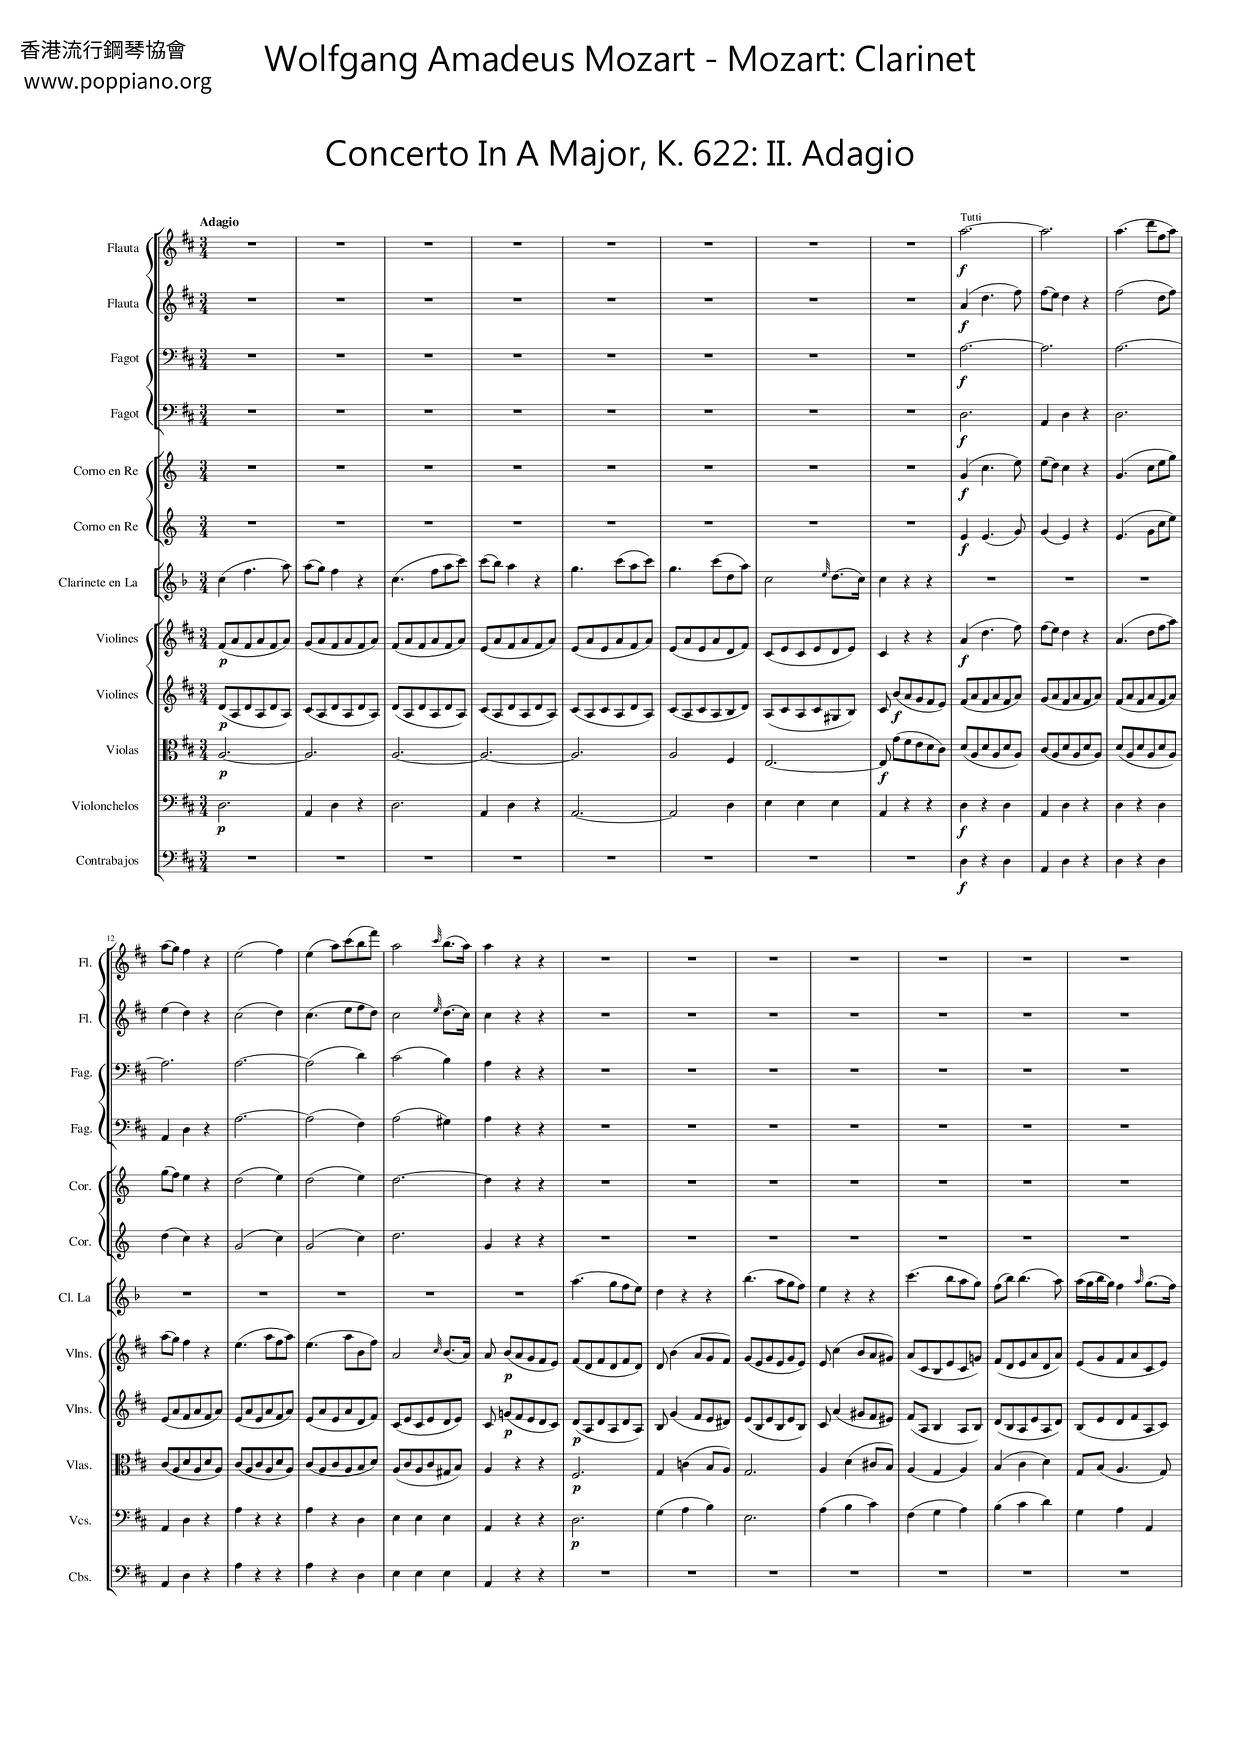 Mozart: Clarinet Concerto in A Major, K. 622: II. Adagio Score